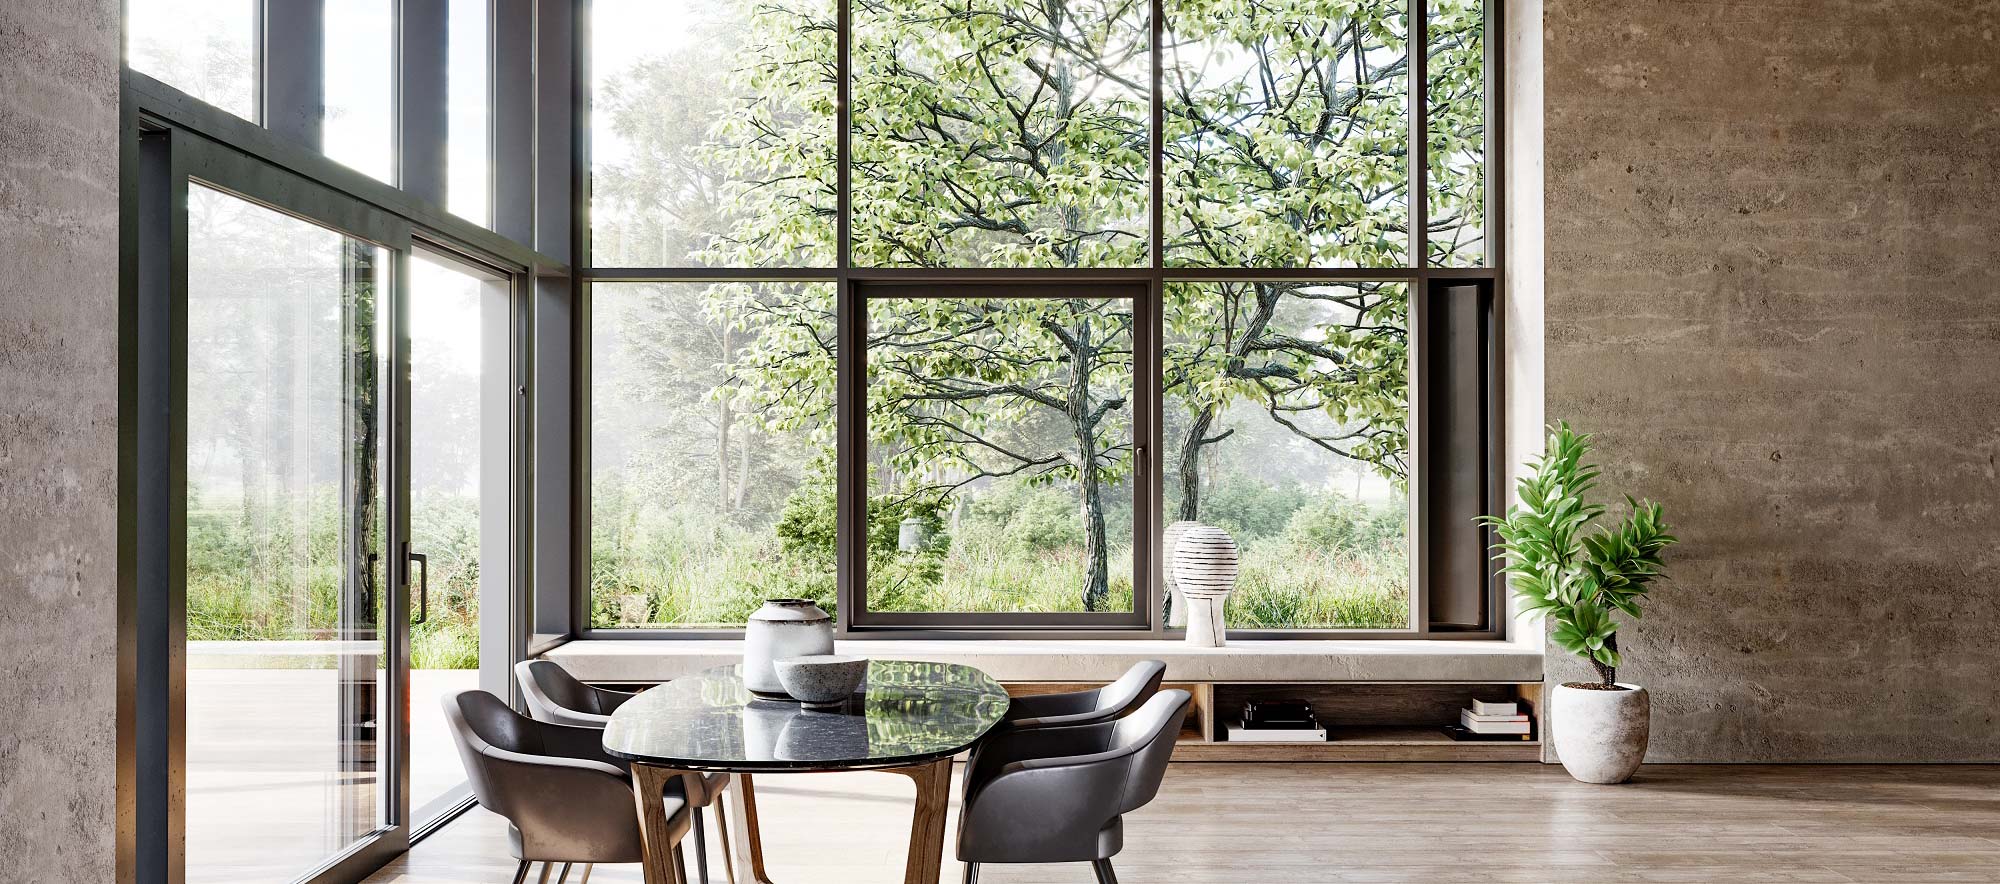 Aluminiumfenster in schönem, modernem Wohnhaus mit Sicht in den Garten.